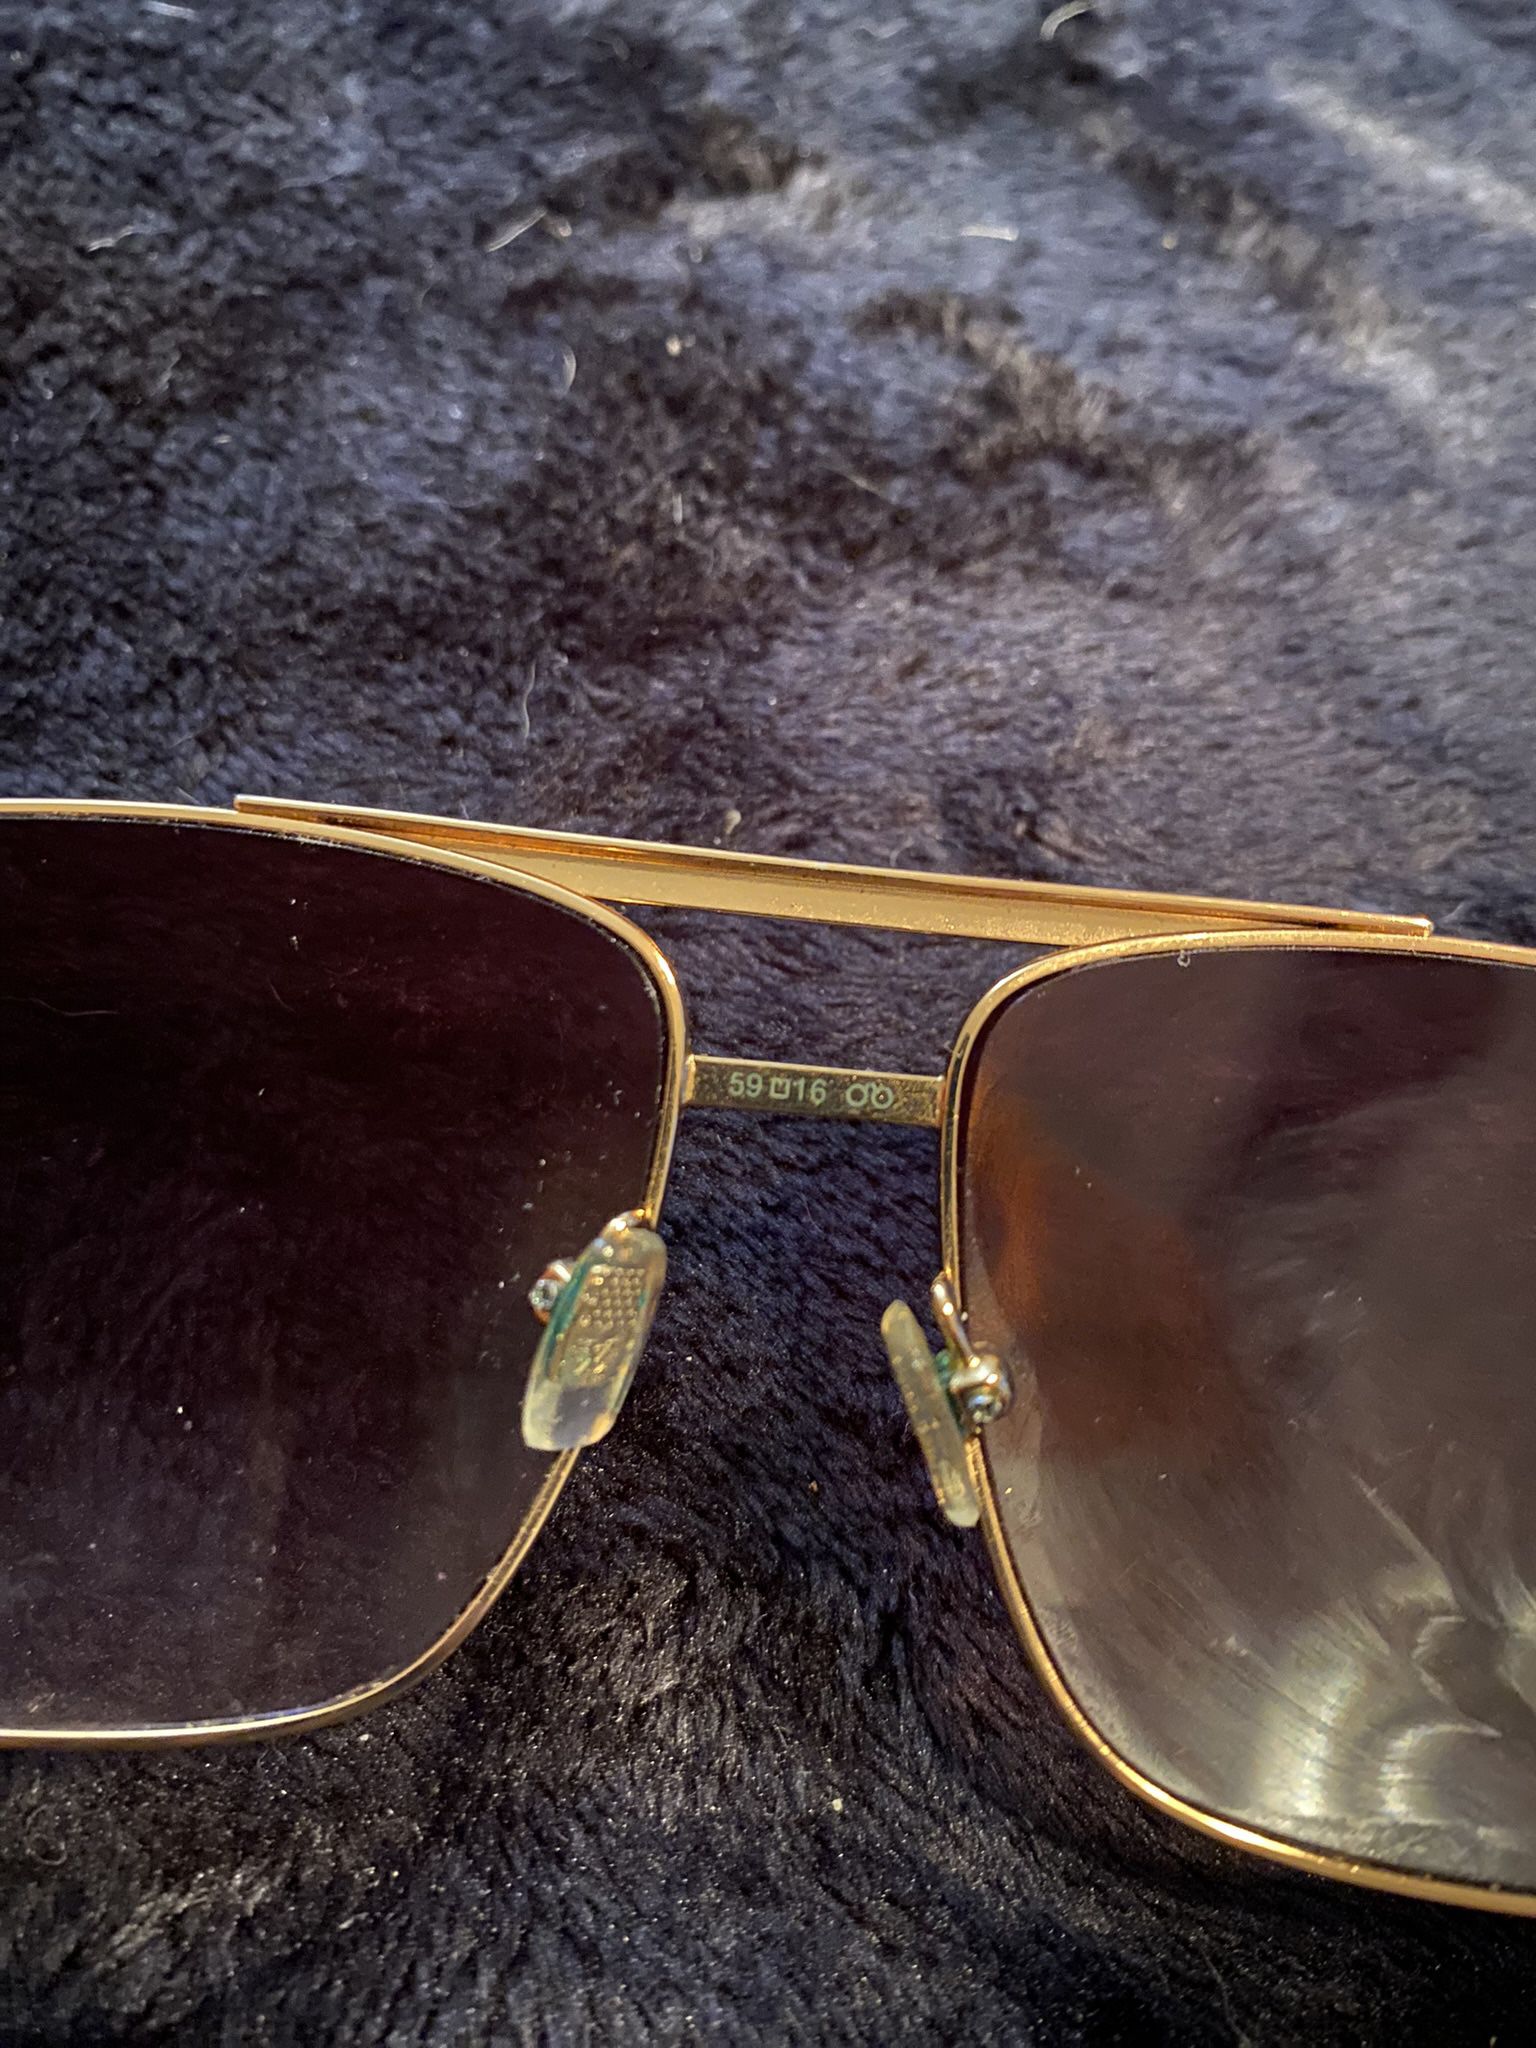 Louis Vuitton Attitude Pilote 59-16 Sunglasses for Sale in Los